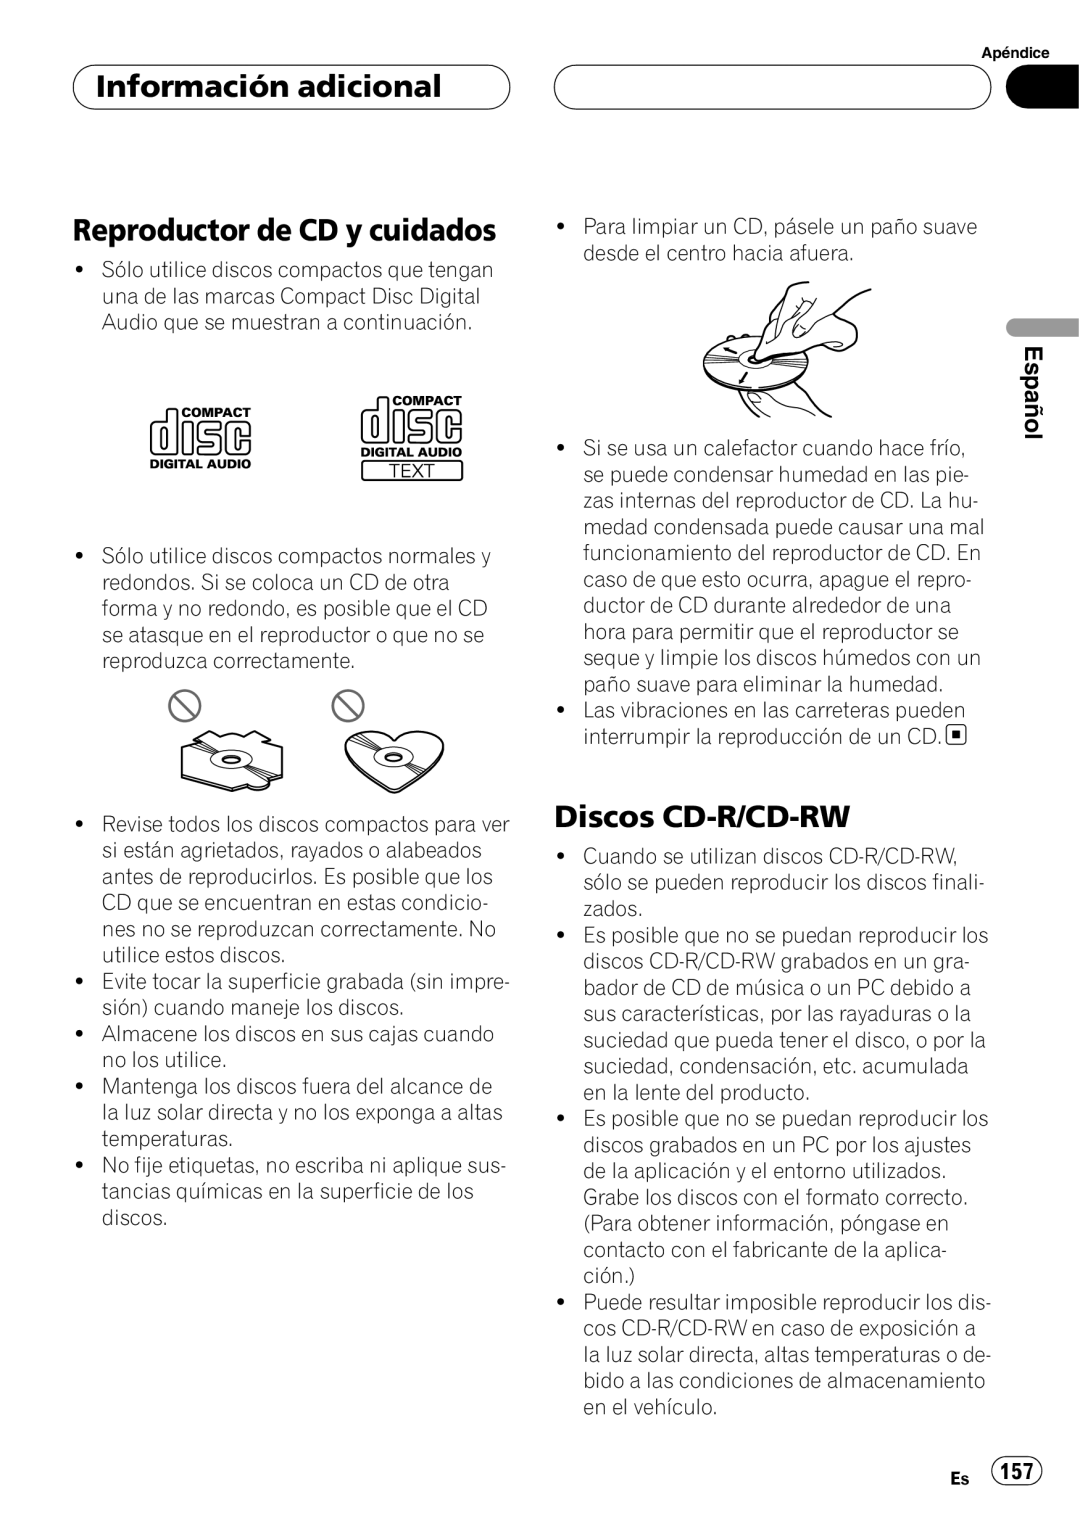 Pioneer DEH-P80RS operation manual Reproductor de CD y cuidados, Discos CD-R/CD-RW, Información adicional, Español 